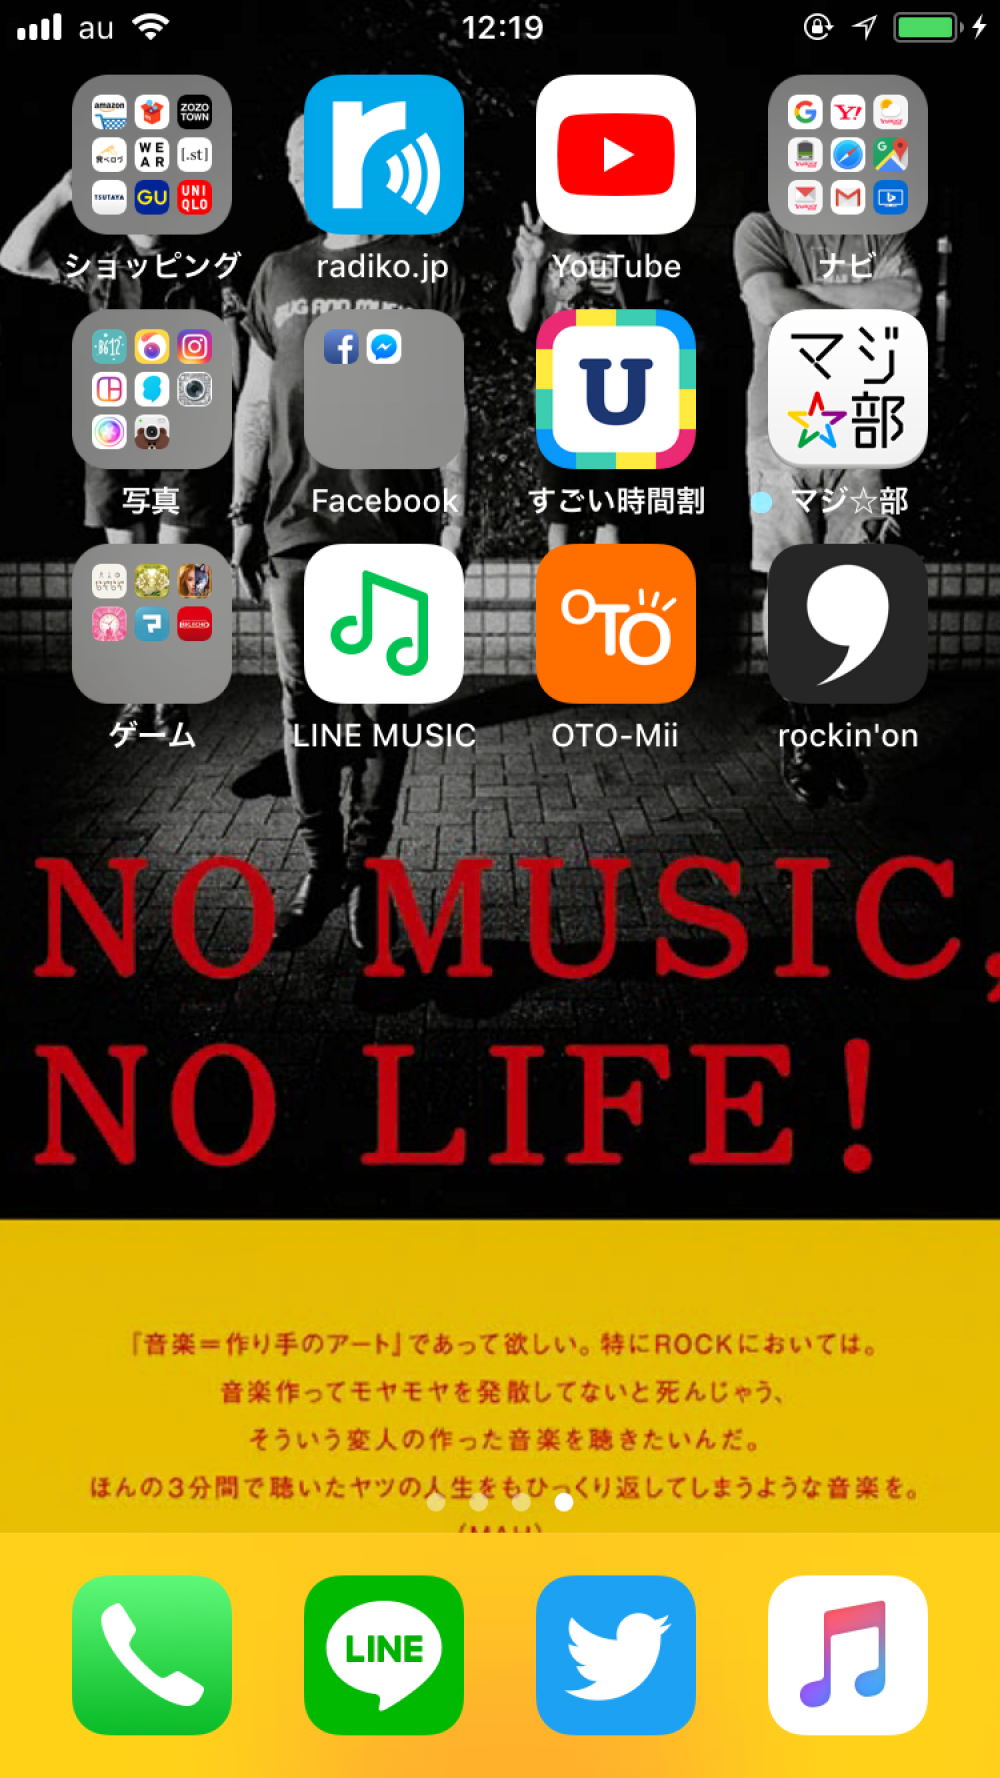 NO MUSIC NO LIFE! ぼのぼの・ぺいのこだわりのスマホ!